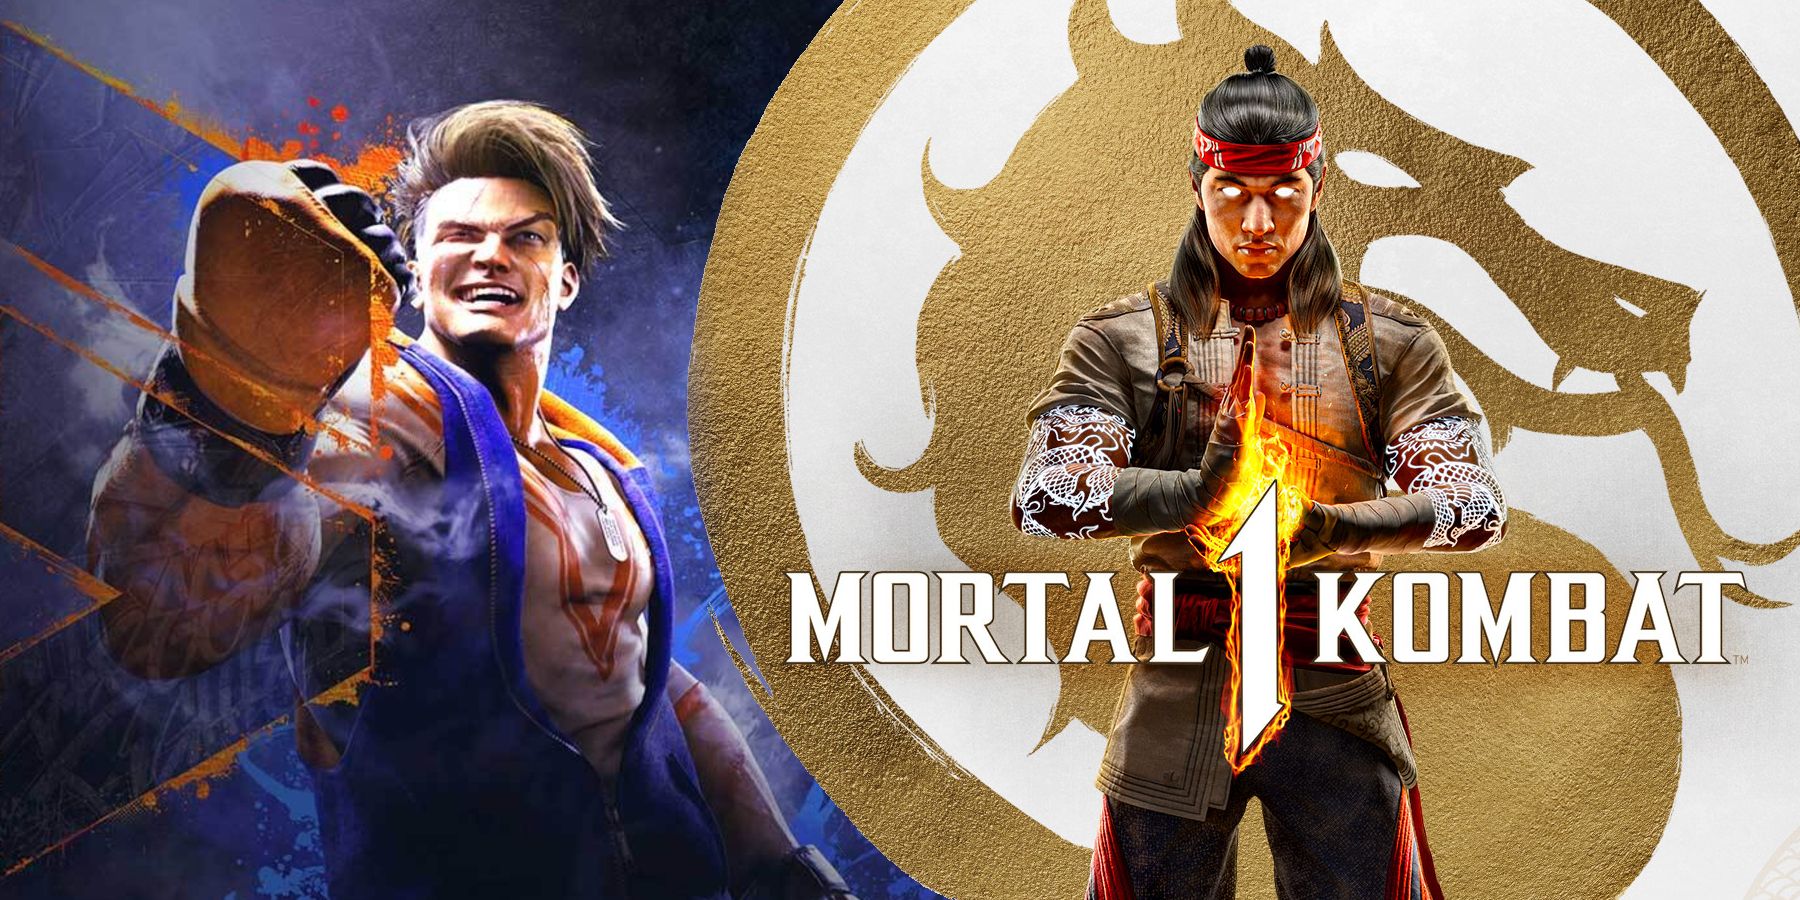 Mortal Kombat vs. Street Fighter